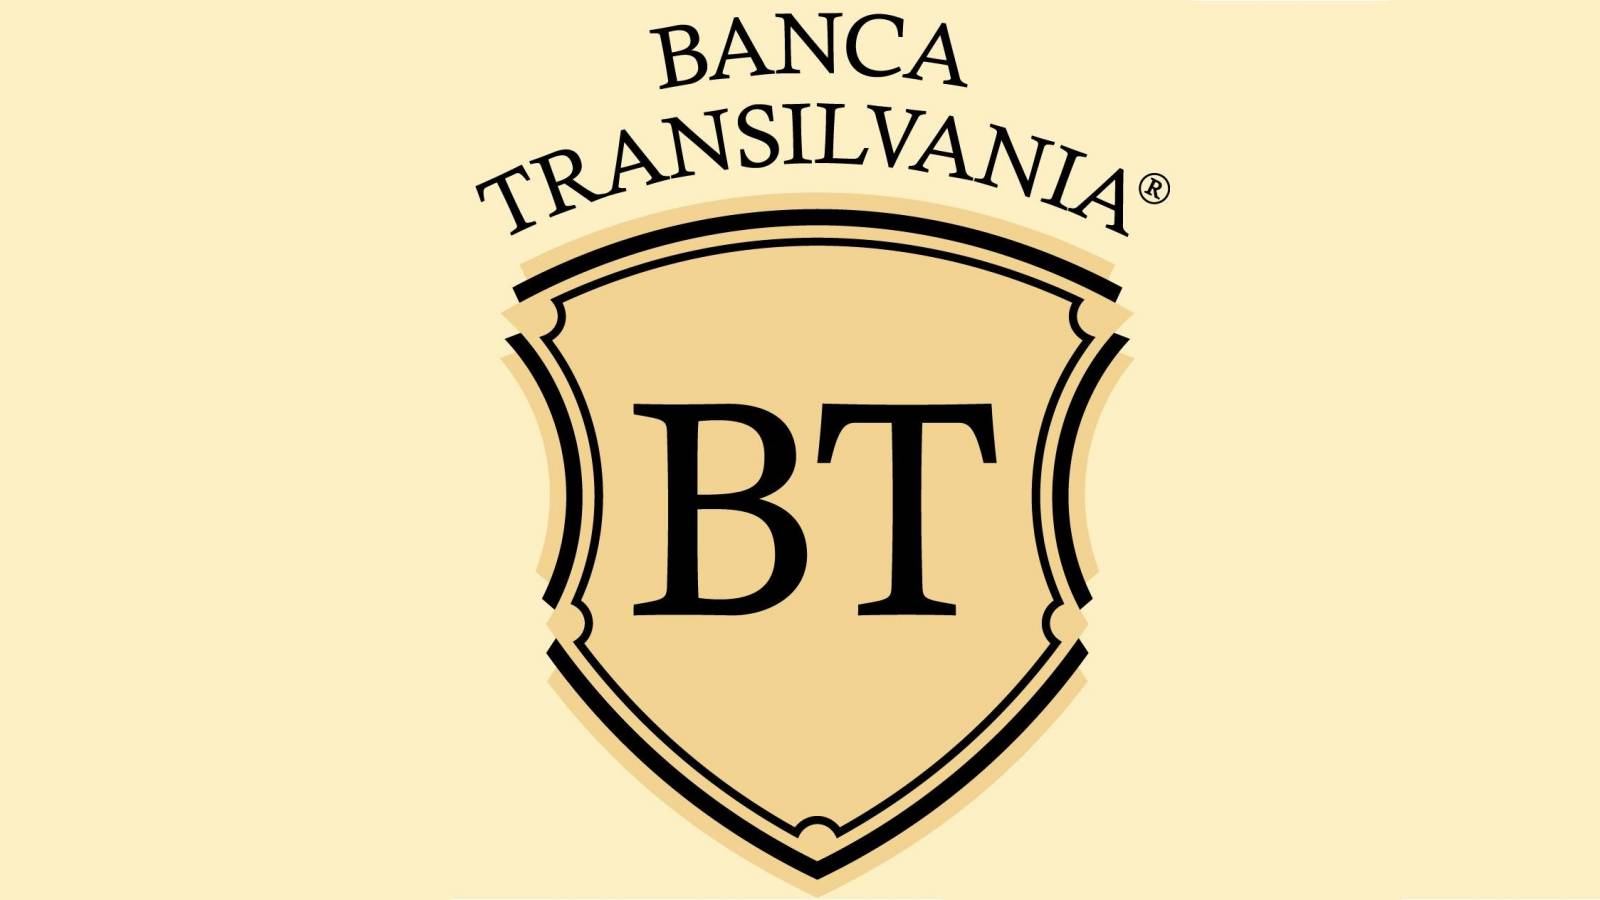 BANCA Transilvania brigad